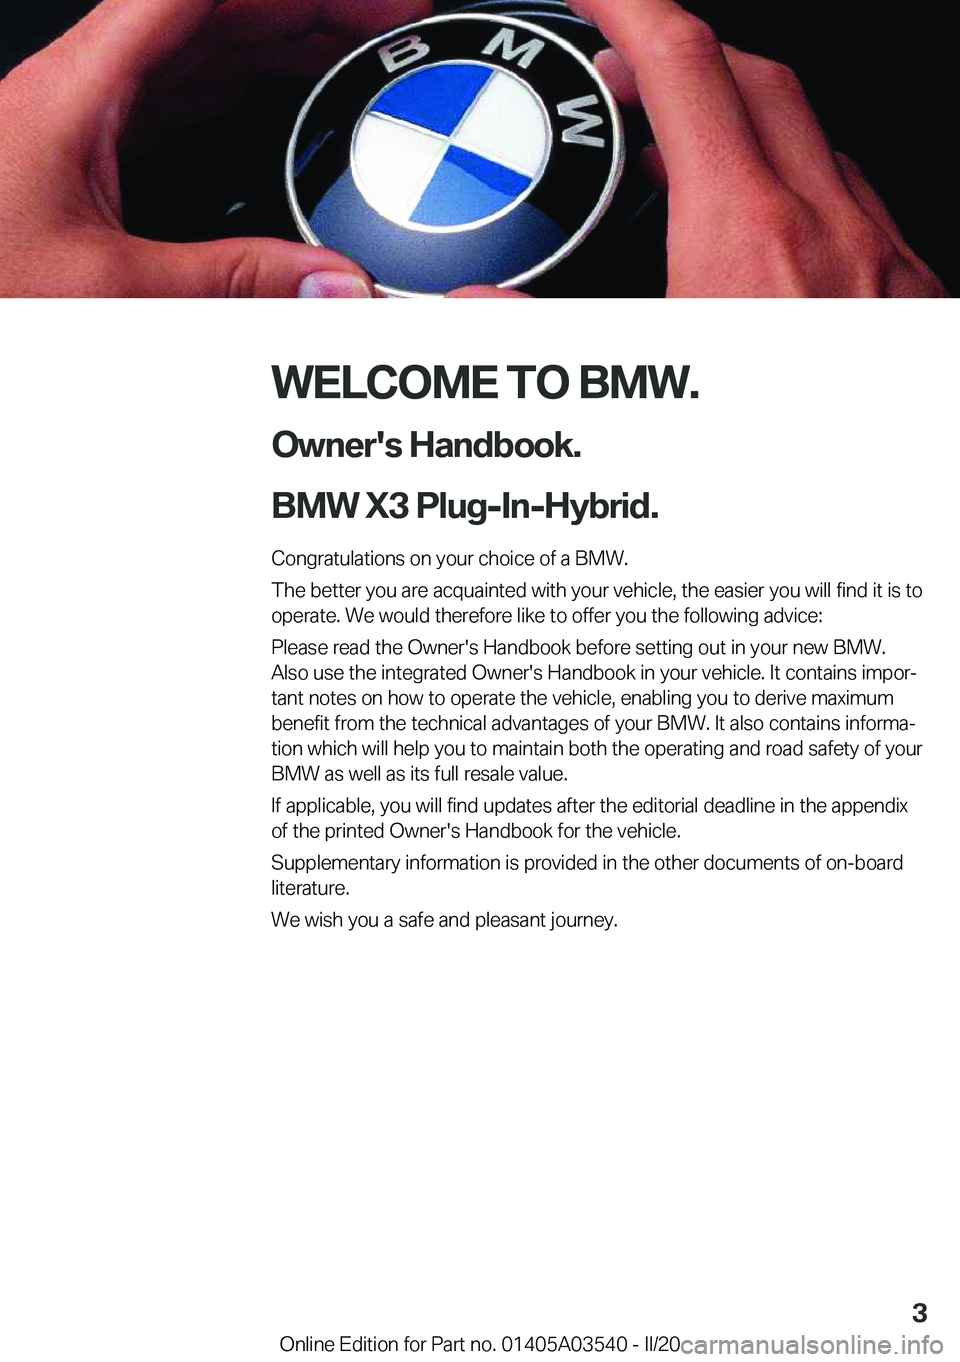 BMW X3 PLUG-IN HYBRID 2020  Owners Manual �W�E�L�C�O�M�E��T�O��B�M�W�.�O�w�n�e�r�'�s��H�a�n�d�b�o�o�k�.
�B�M�W��X�3��P�l�u�g�-�I�n�-�H�y�b�r�i�d�.
�C�o�n�g�r�a�t�u�l�a�t�i�o�n�s��o�n��y�o�u�r��c�h�o�i�c�e��o�f��a��B�M�W�.
�T�h�